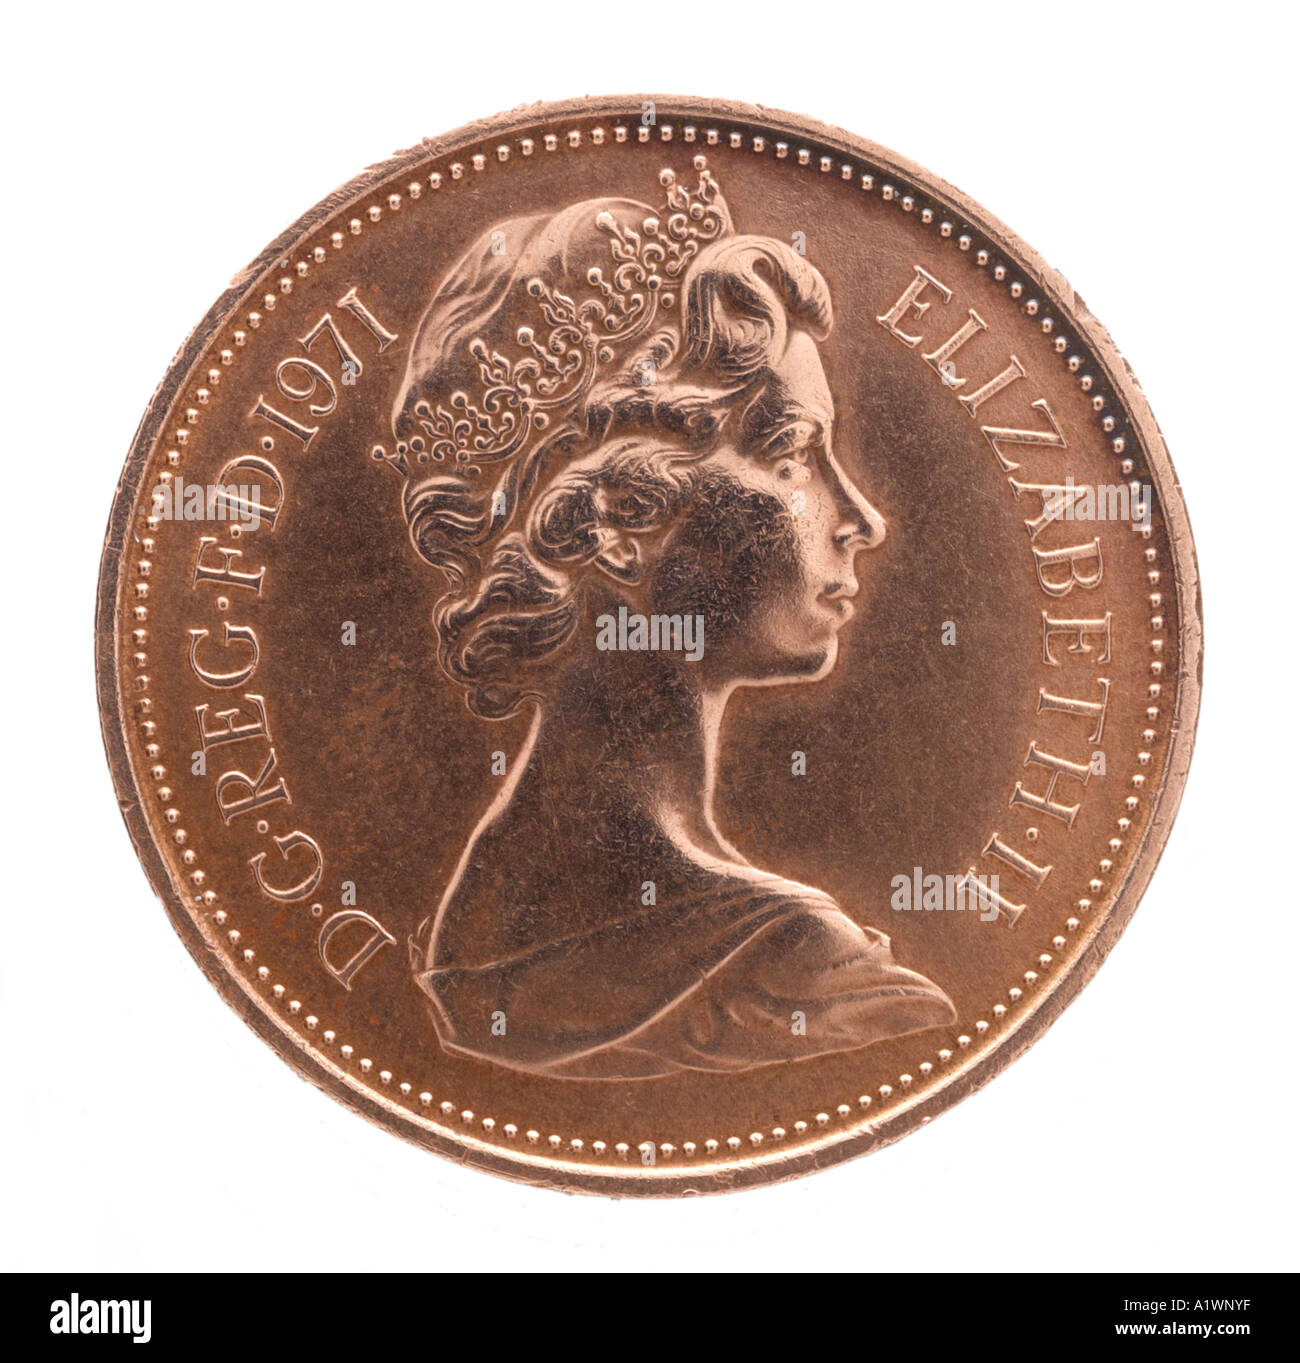 La reine Elizabeth II Regina Reg 2 virgule 1 un nouveau visage jeune pence P droit profil couronne lumineuse de cuivre Banque D'Images